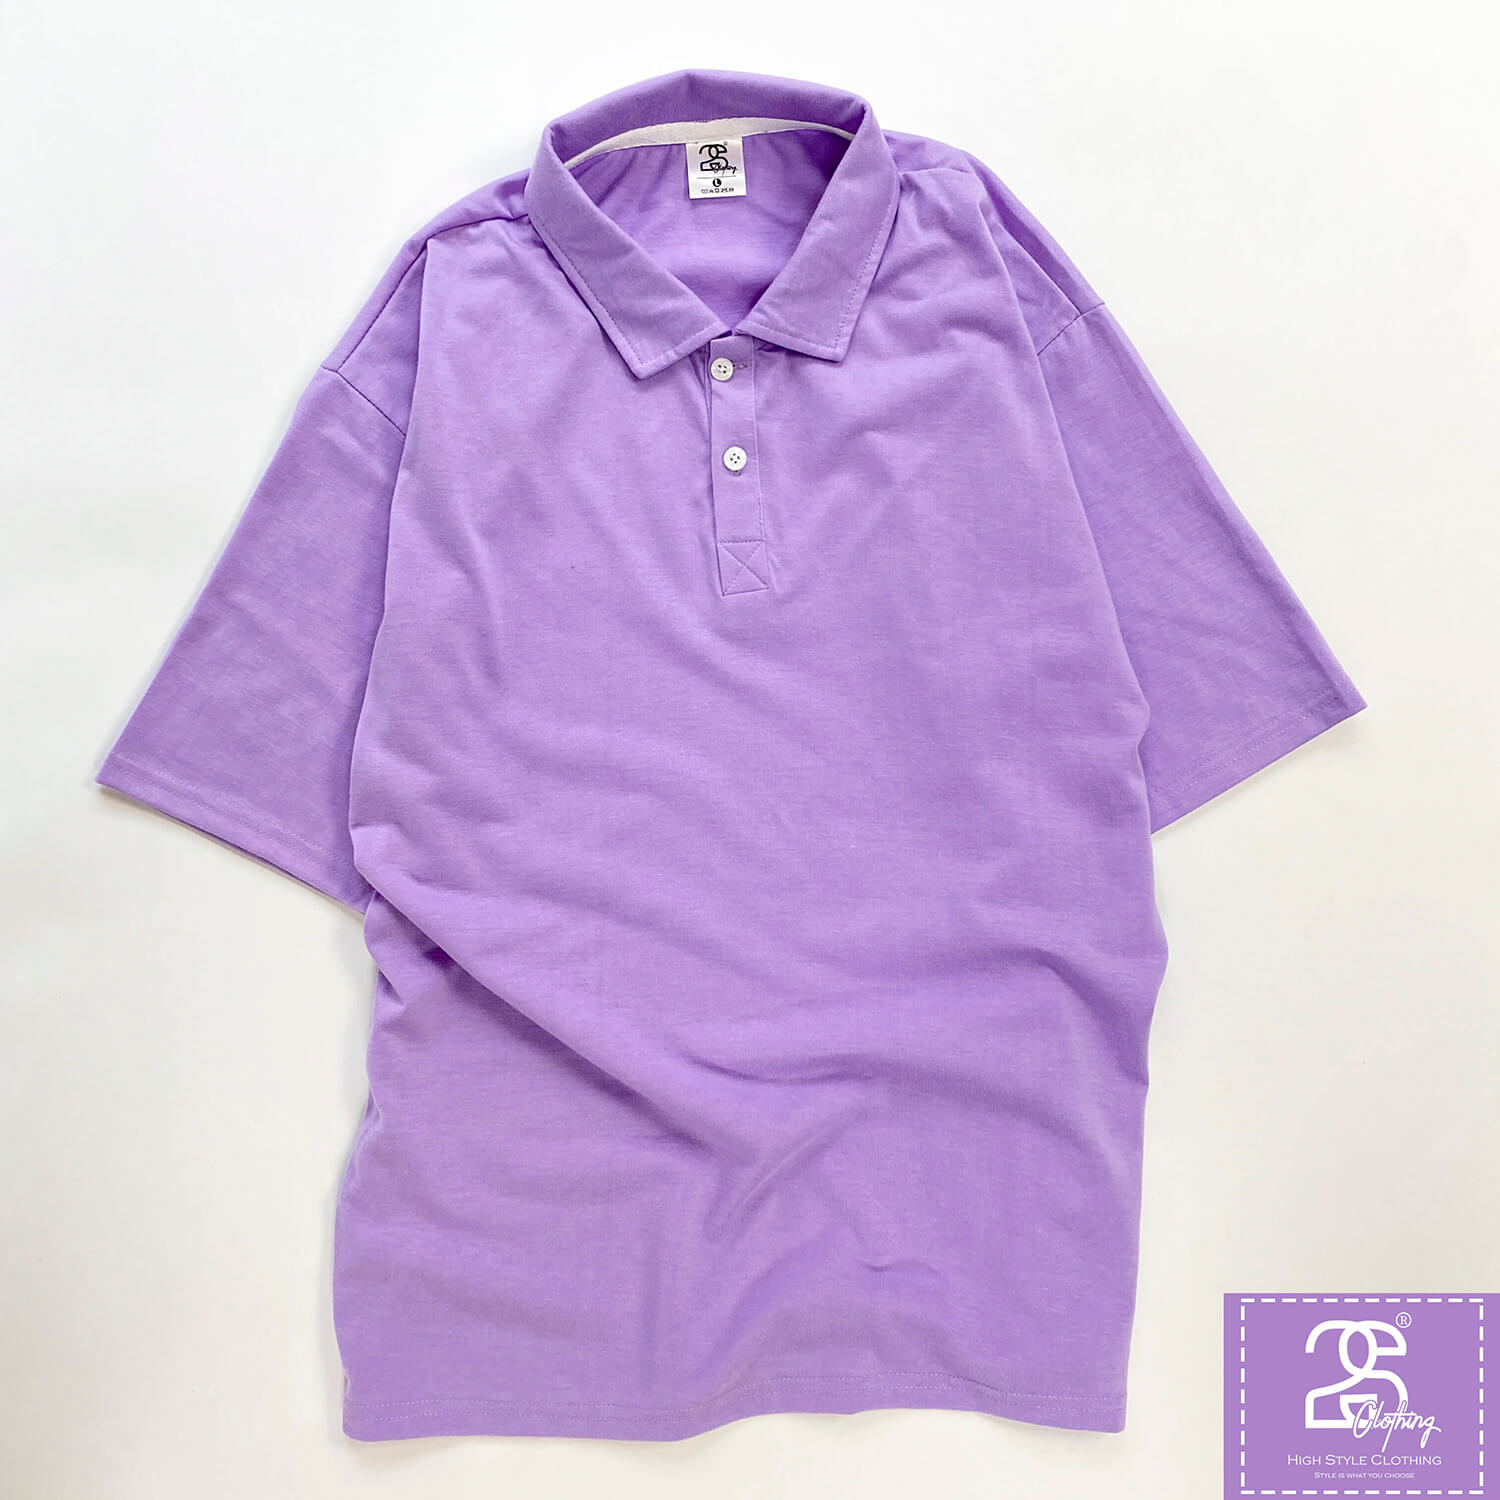 Áo thun màu tím +10 mẫu thiết kế đẹp - Đồng Phục Phú Tài